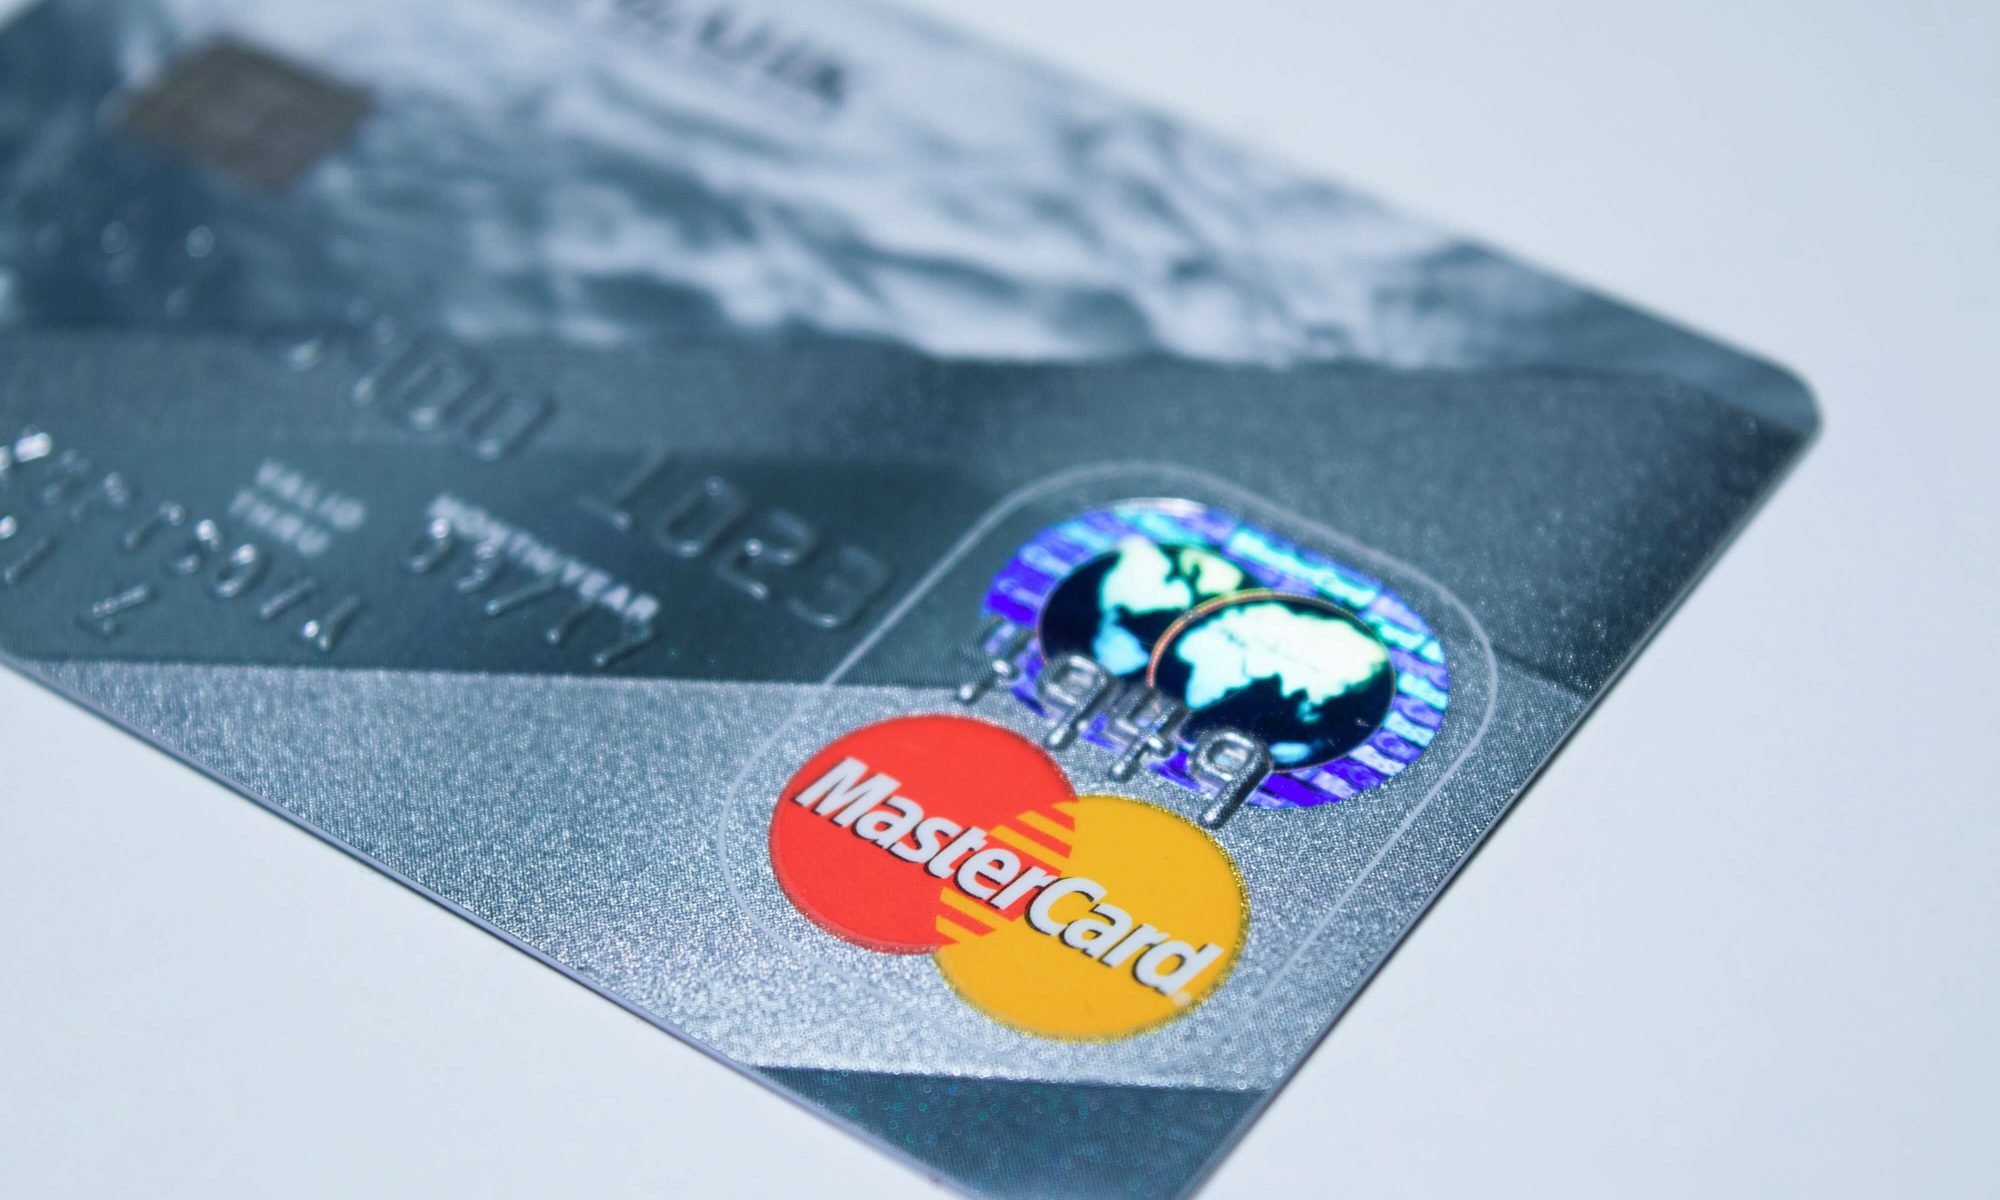 beneficios de las tarjetas de crédito Mastercard en México.